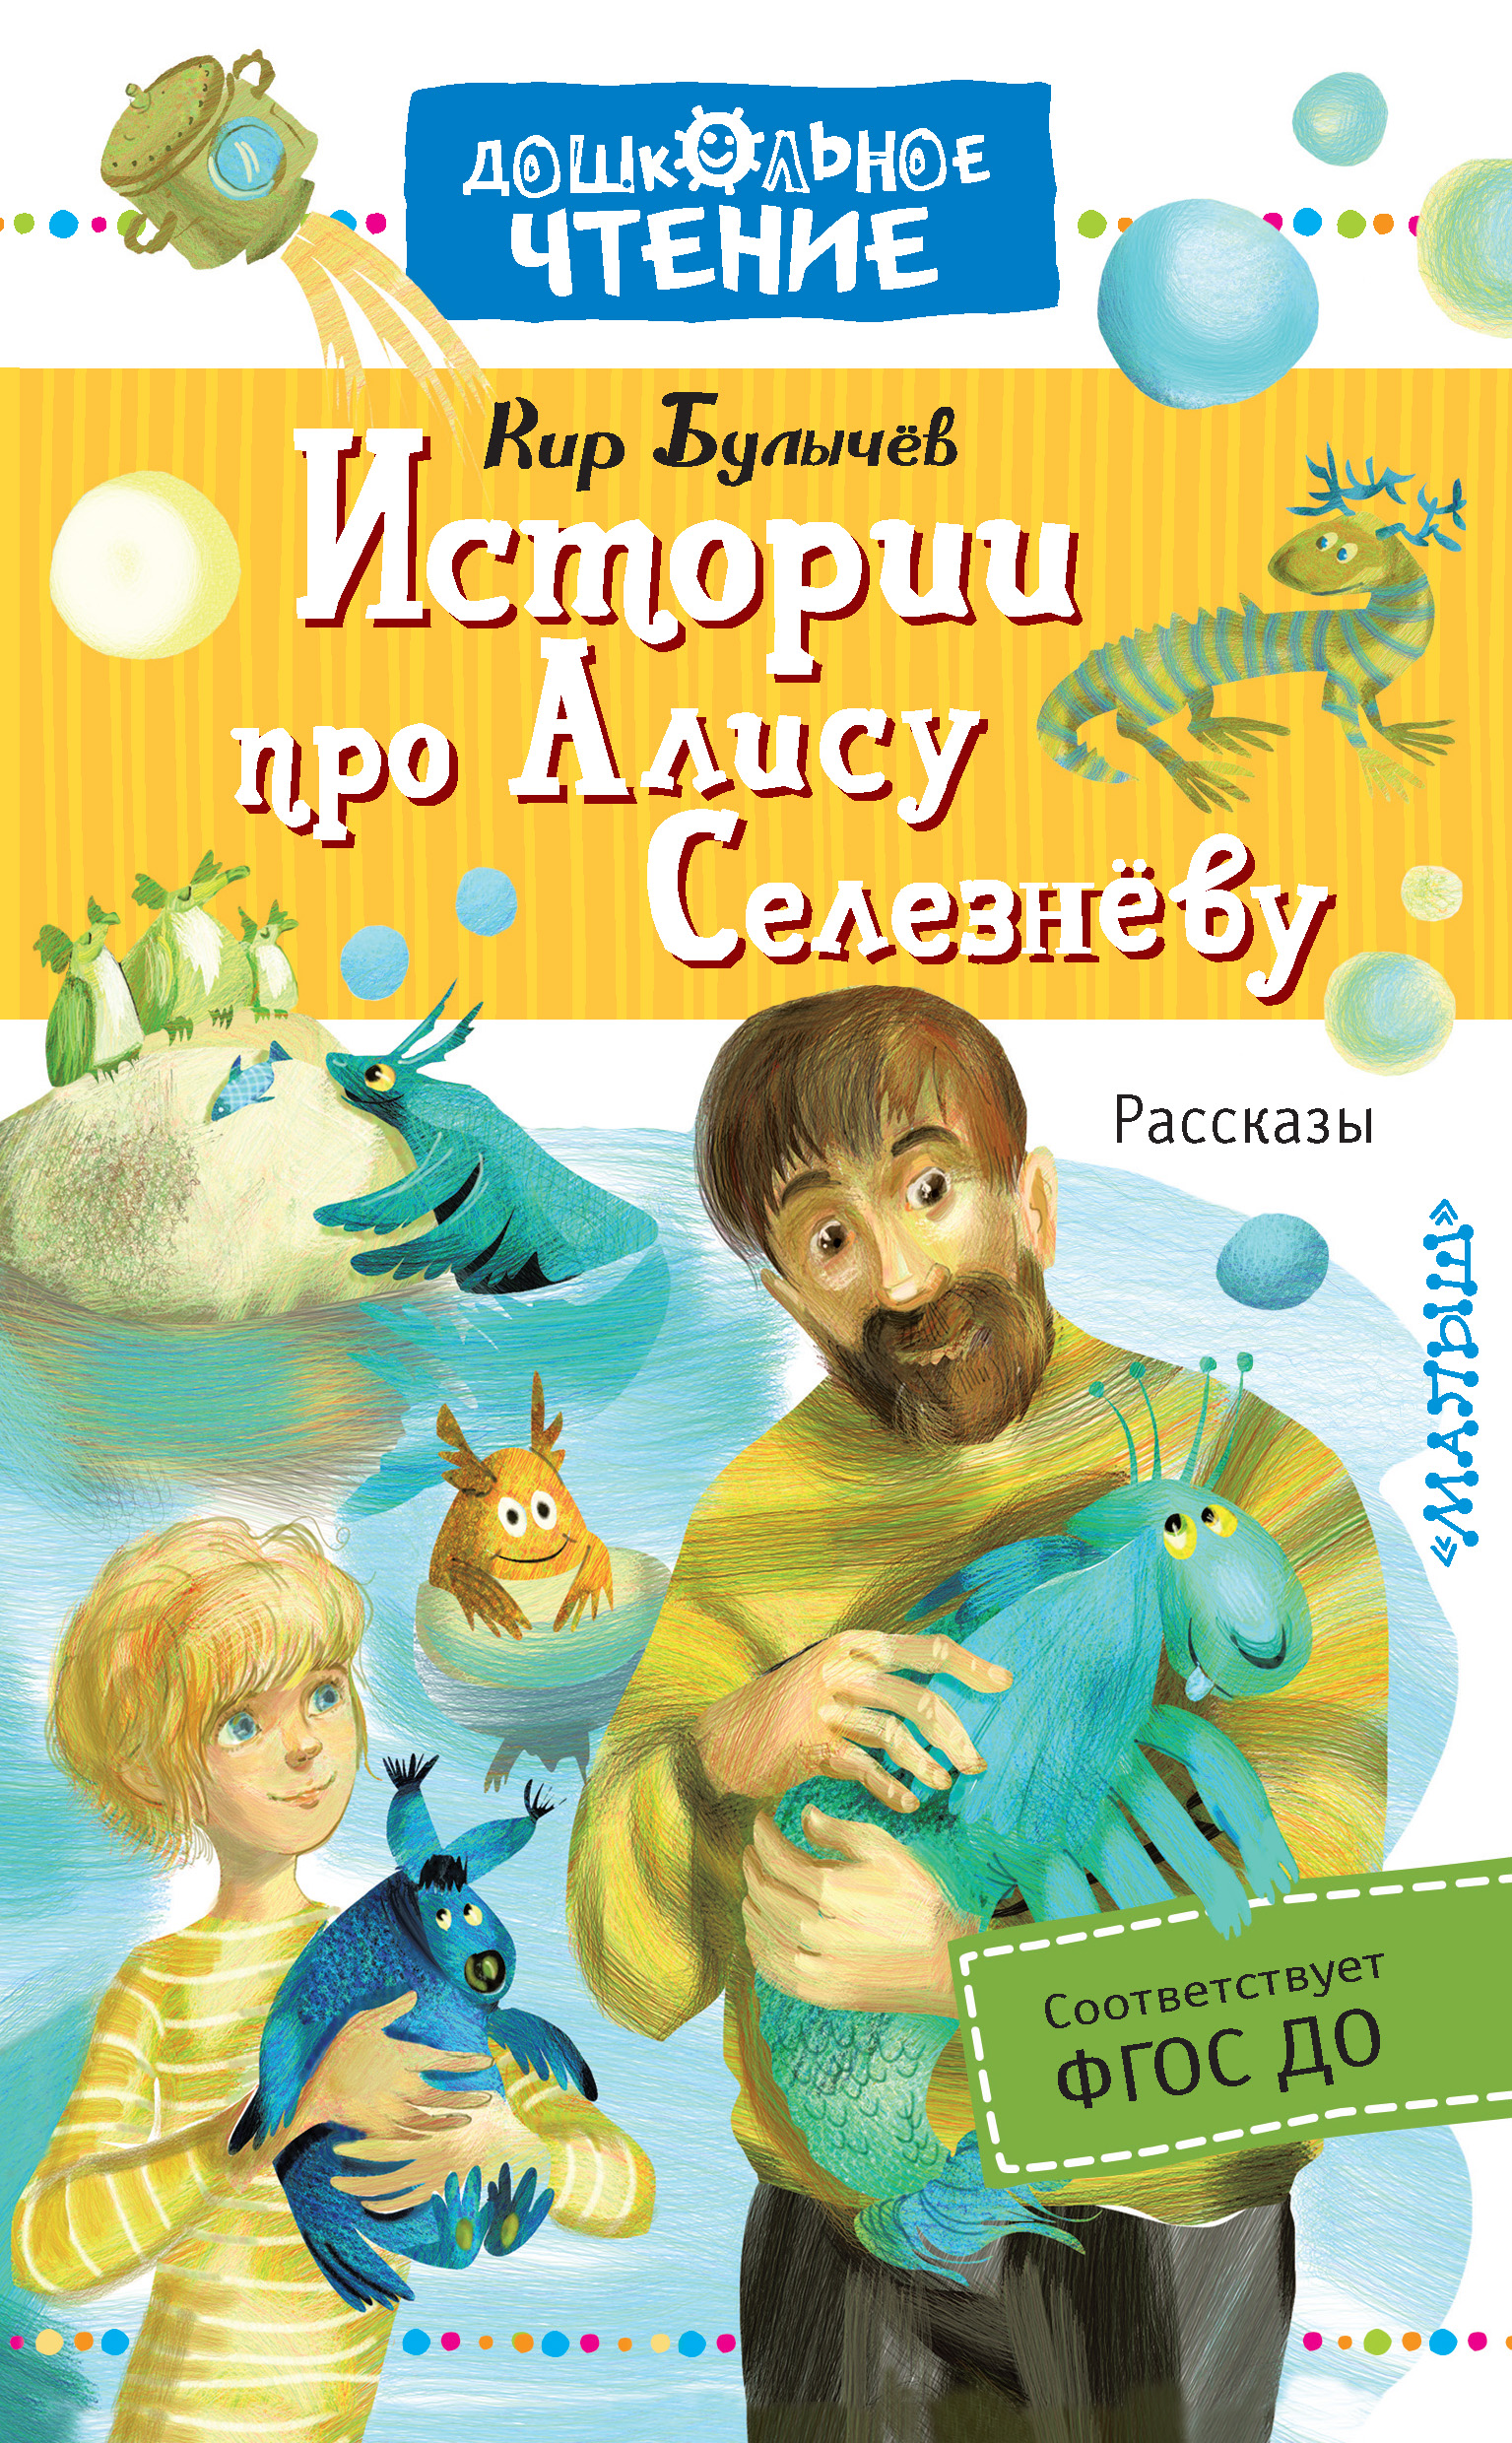 К булычев рассказы. Книга прик Алисы. Фантастическая литература для детей.